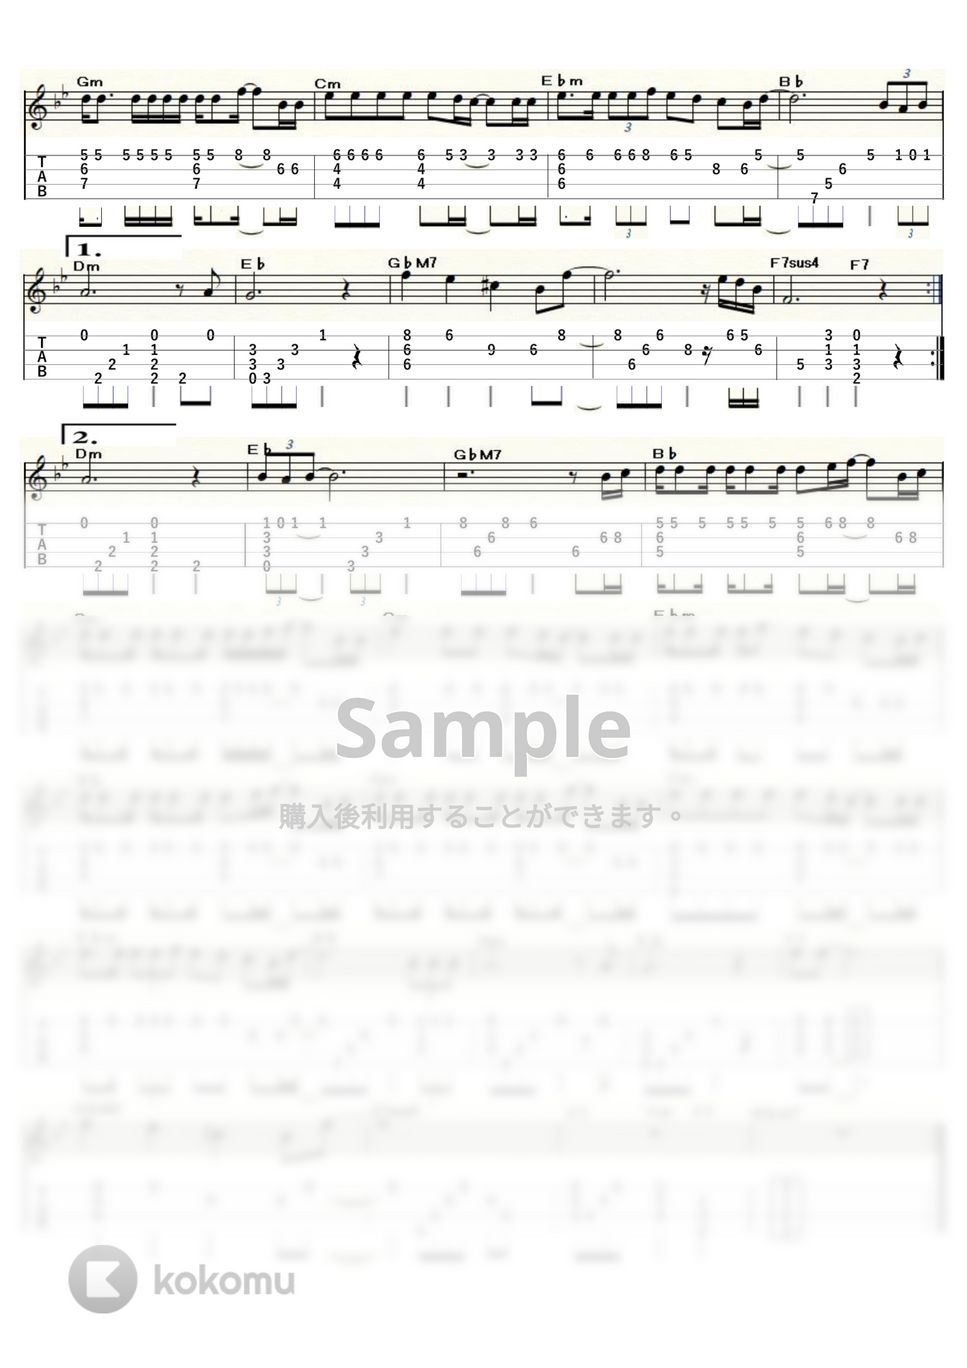 沢田知可子 - 会いたい (ｳｸﾚﾚｿﾛ / Low-G / 上級) by ukulelepapa